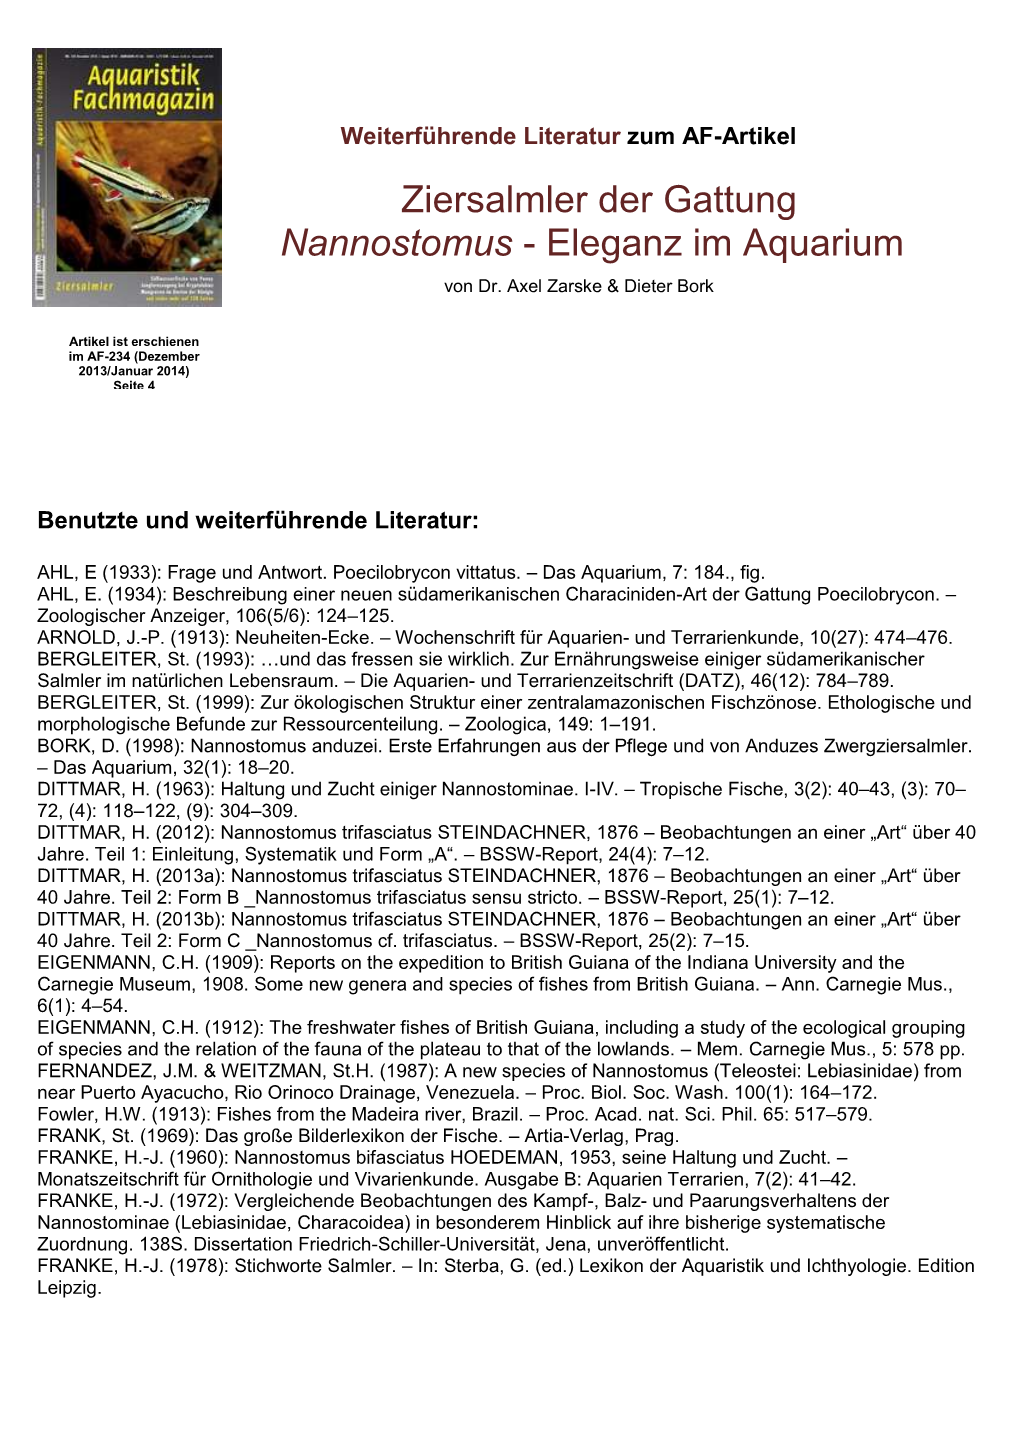 Ziersalmler Der Gattung Nannostomus - Eleganz Im Aquarium ) – Von Dr